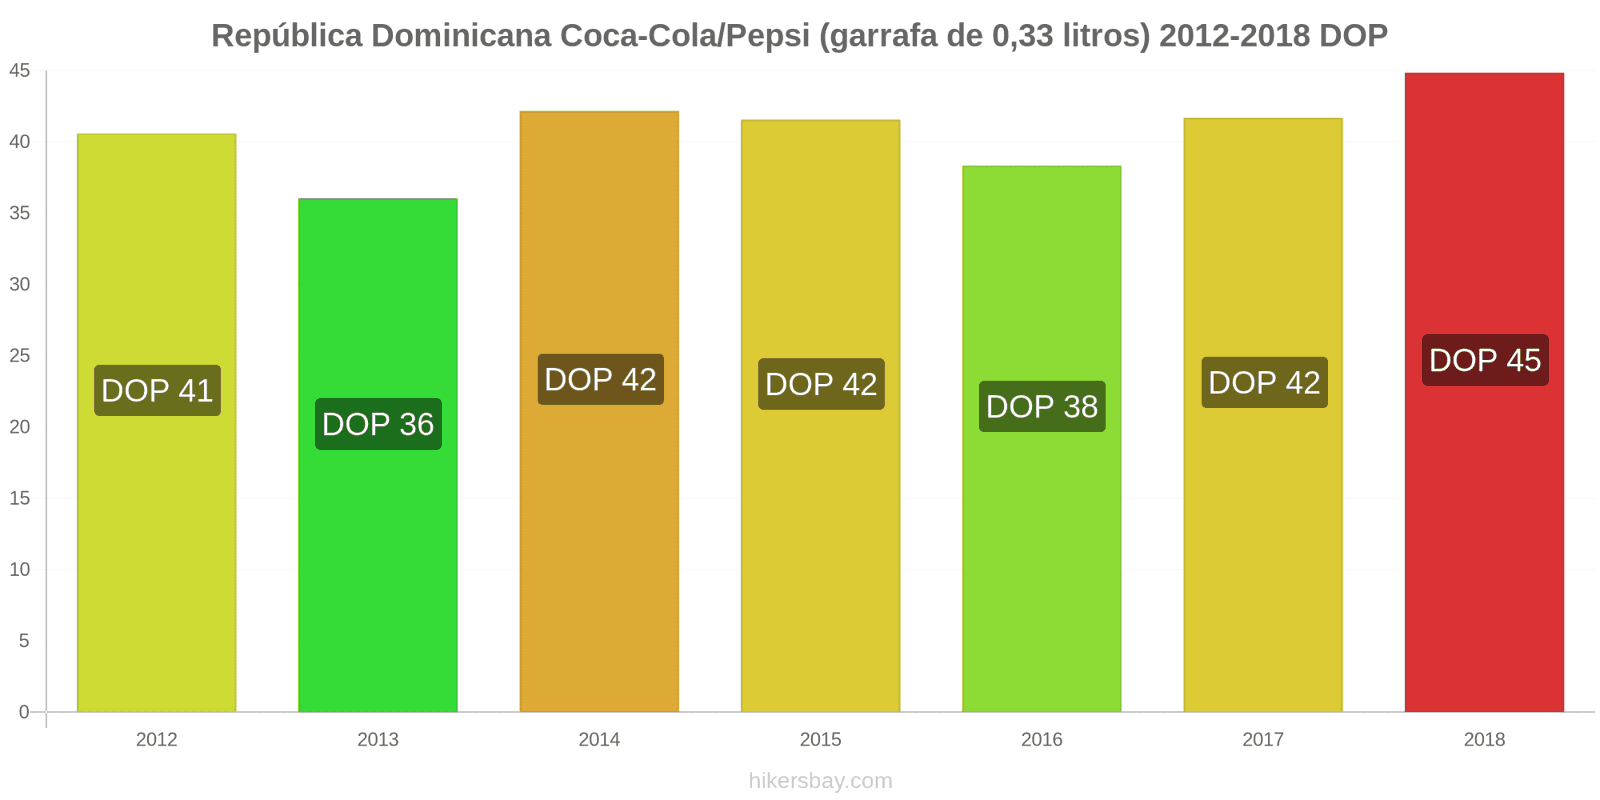 República Dominicana mudanças de preços Coca-Cola/Pepsi (garrafa de 0.33 litros) hikersbay.com